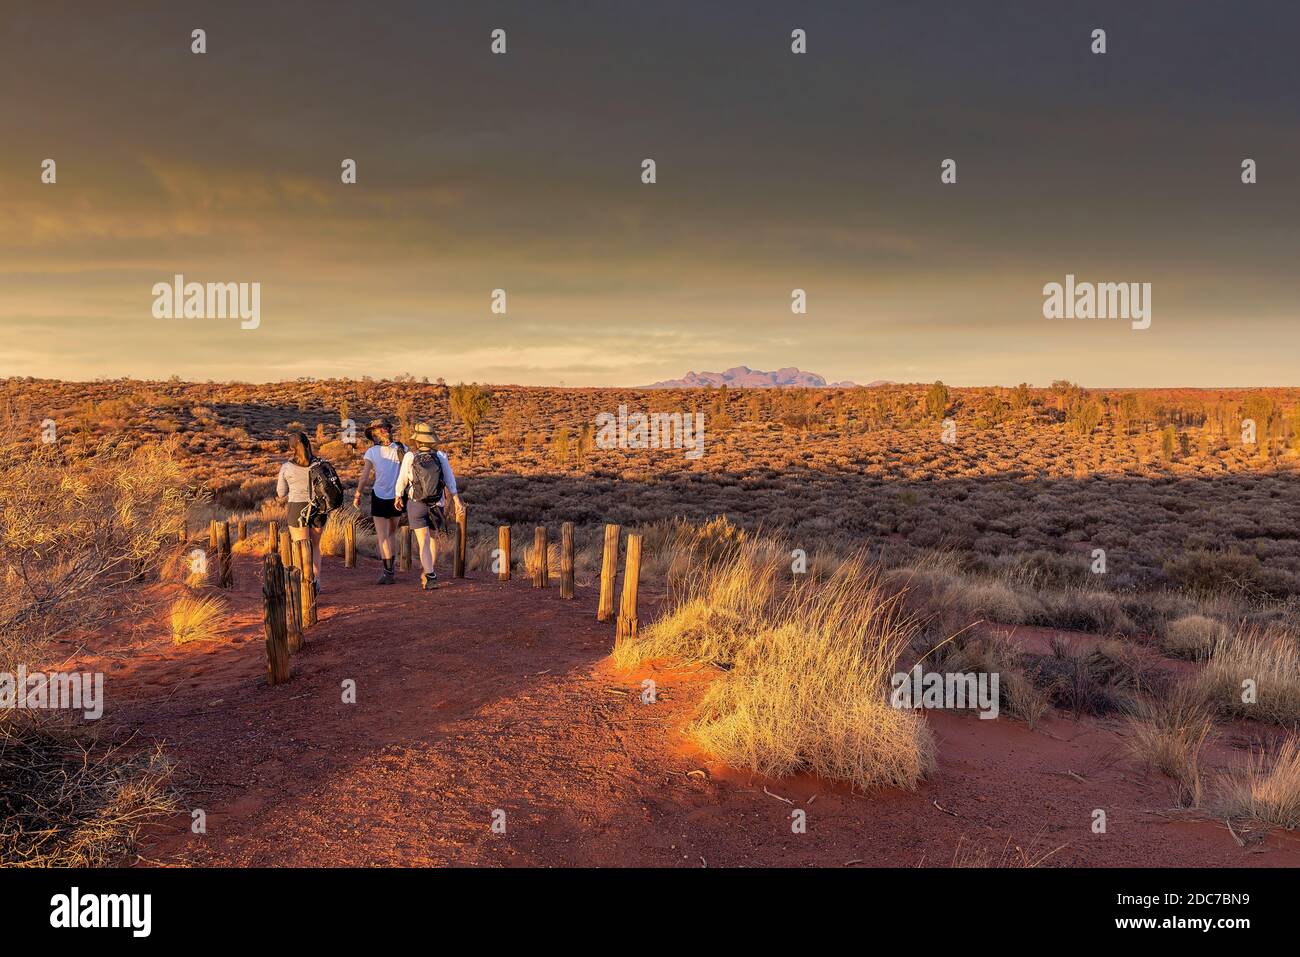 Northern Territory, Australien - Wanderer im australischen Outback bewundern die spektakuläre Landschaft. Stockfoto